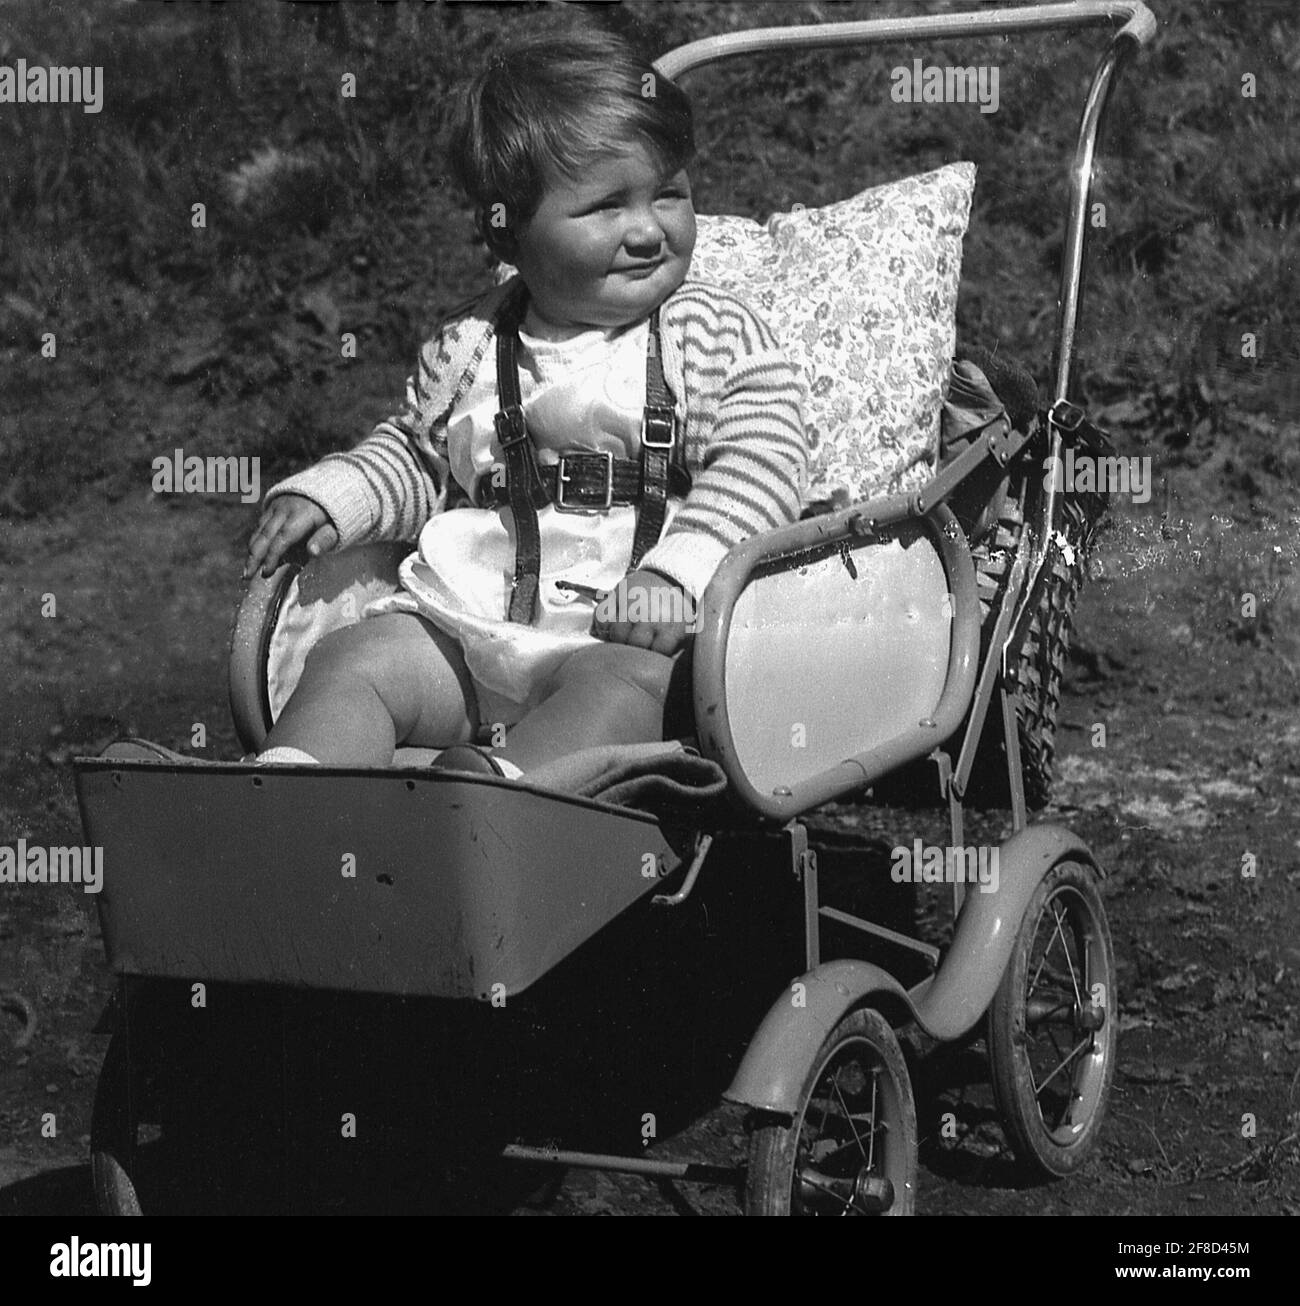 Anni '50, storico, fuori in un giorno d'estate, un bambino bambino seduto in una struttura in metallo pushchair o buggy dell'epoca, con poggiapiedi attaccato e un cuscino per sostegno schiena, Inghilterra, Regno Unito. Foto Stock